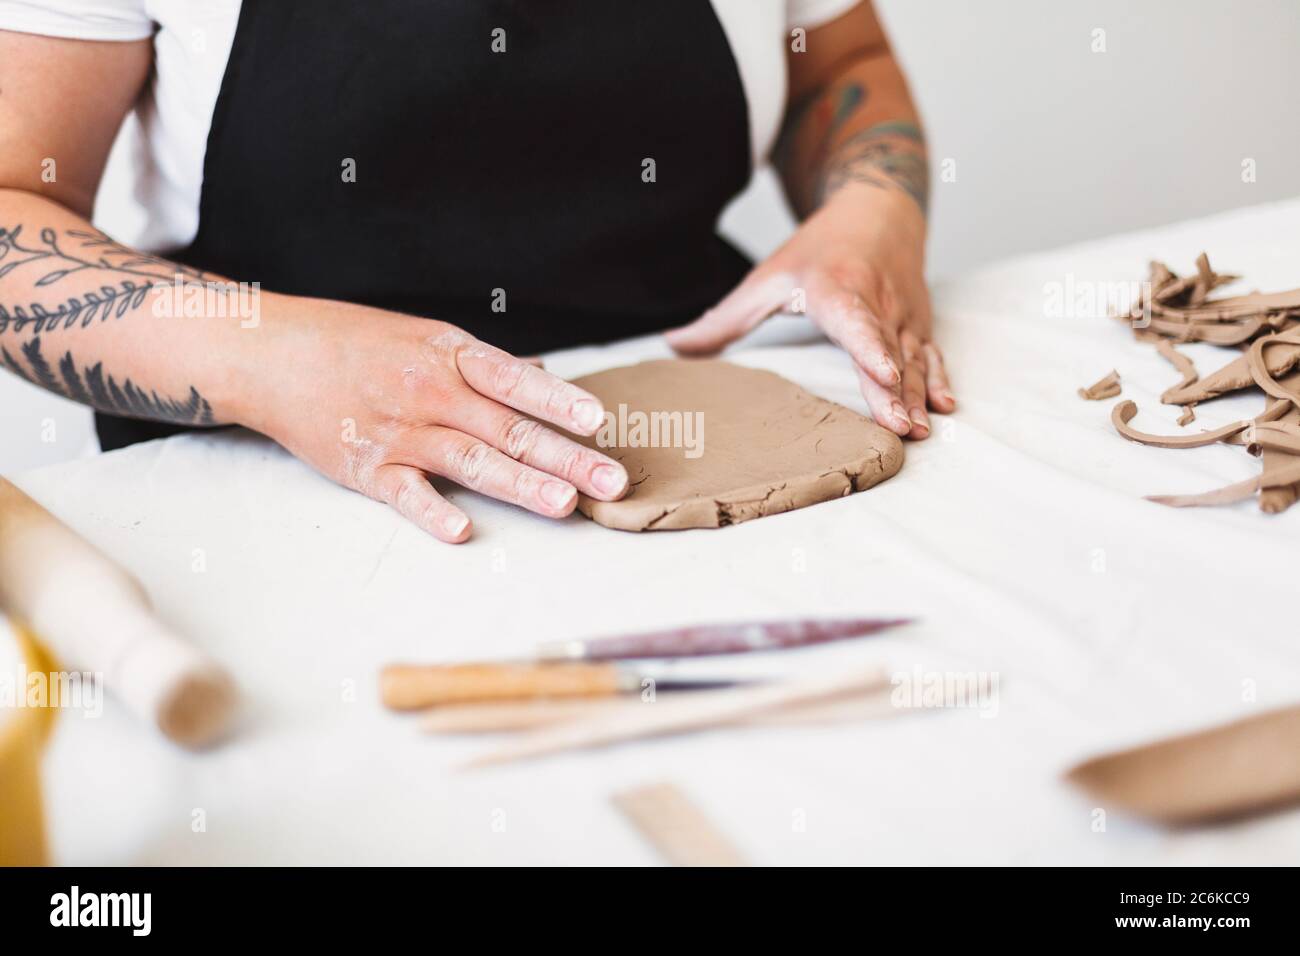 Nahaufnahme Frau Hände mit Tattoo in schwarzer Schürze arbeiten mit Ton in Töpferei. Stockfoto